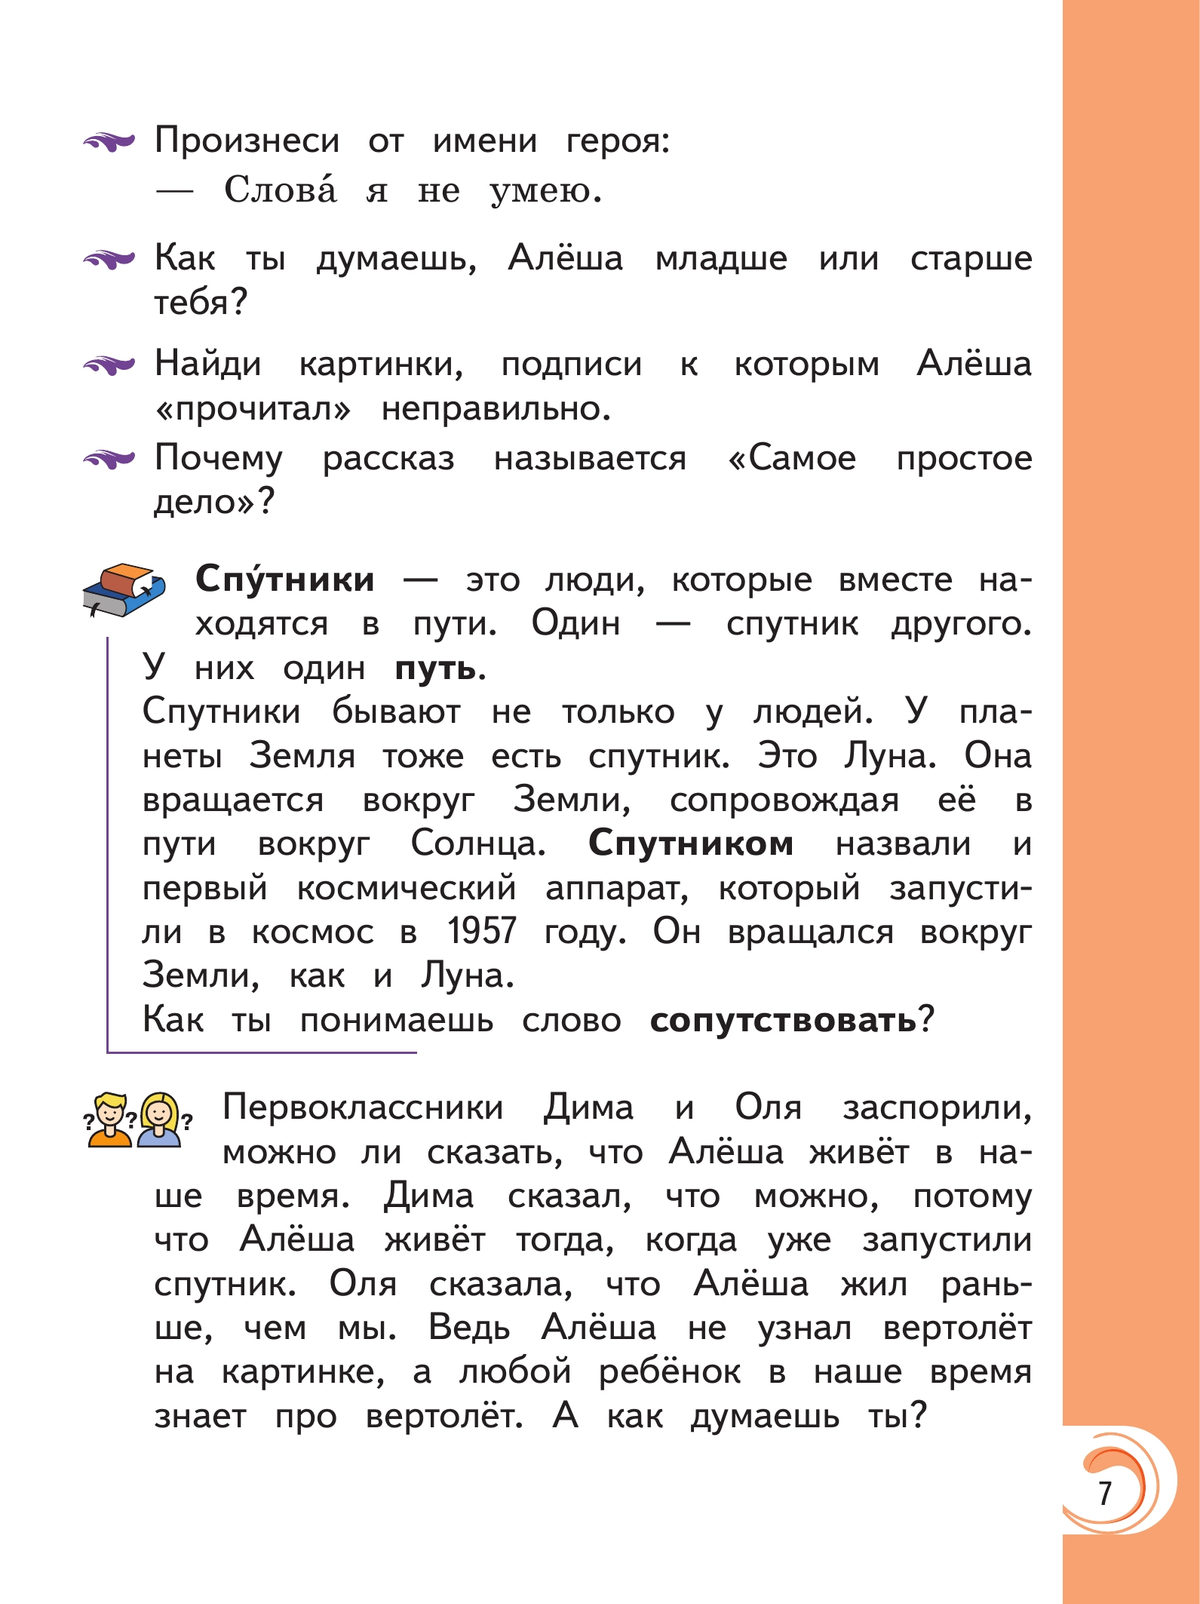 Литературное чтение на родном русском языке. 1 класс. Учебник 8